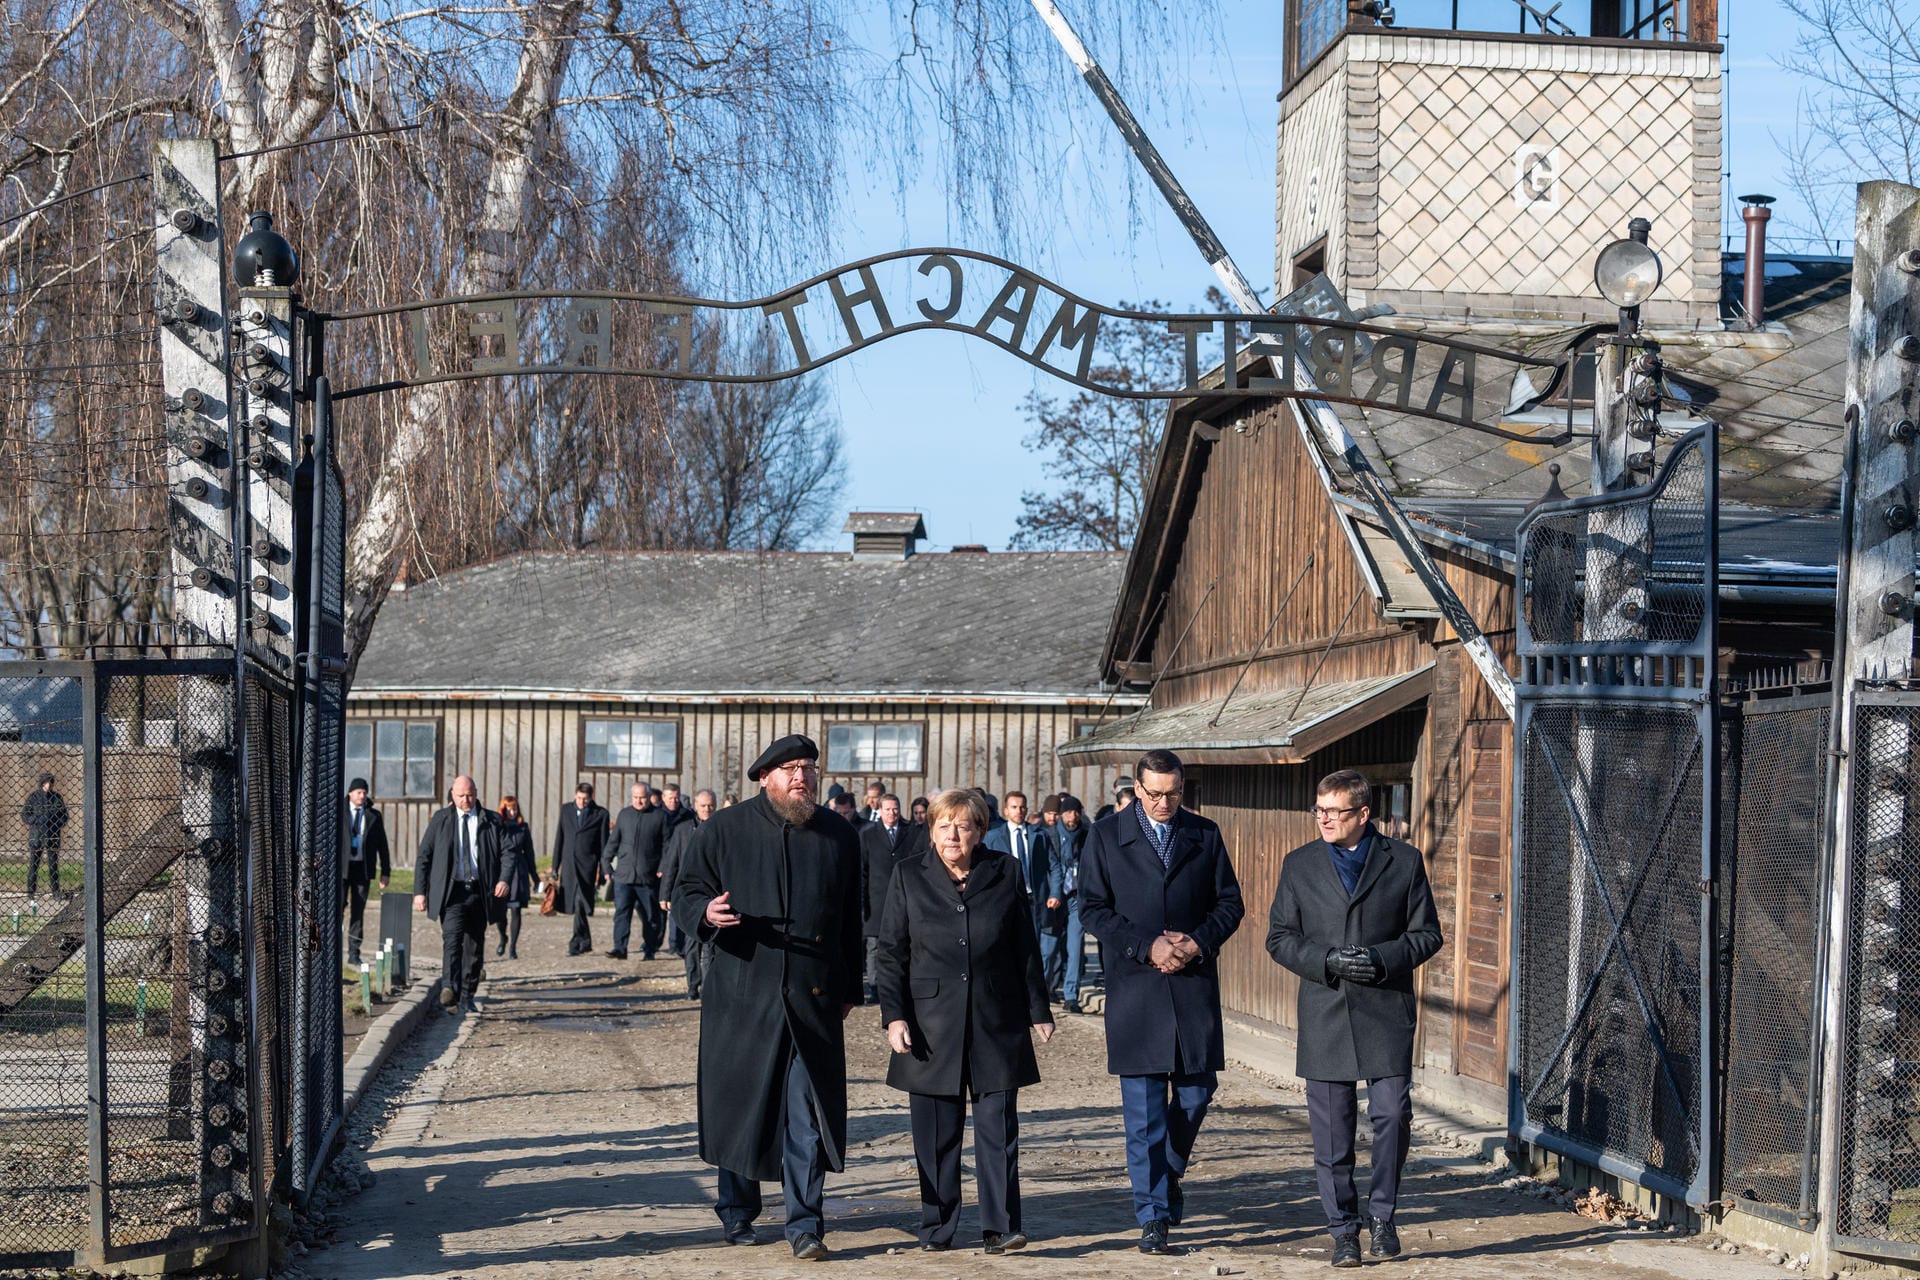 Bundeskanzlerin Angela Merkel und Polens Ministerpräsident Mateusz Morawiecki gehen im einstigen Vernichtungslager Auschwitz durch den Eingang mit der Aufschrift: "Arbeit Macht Frei".